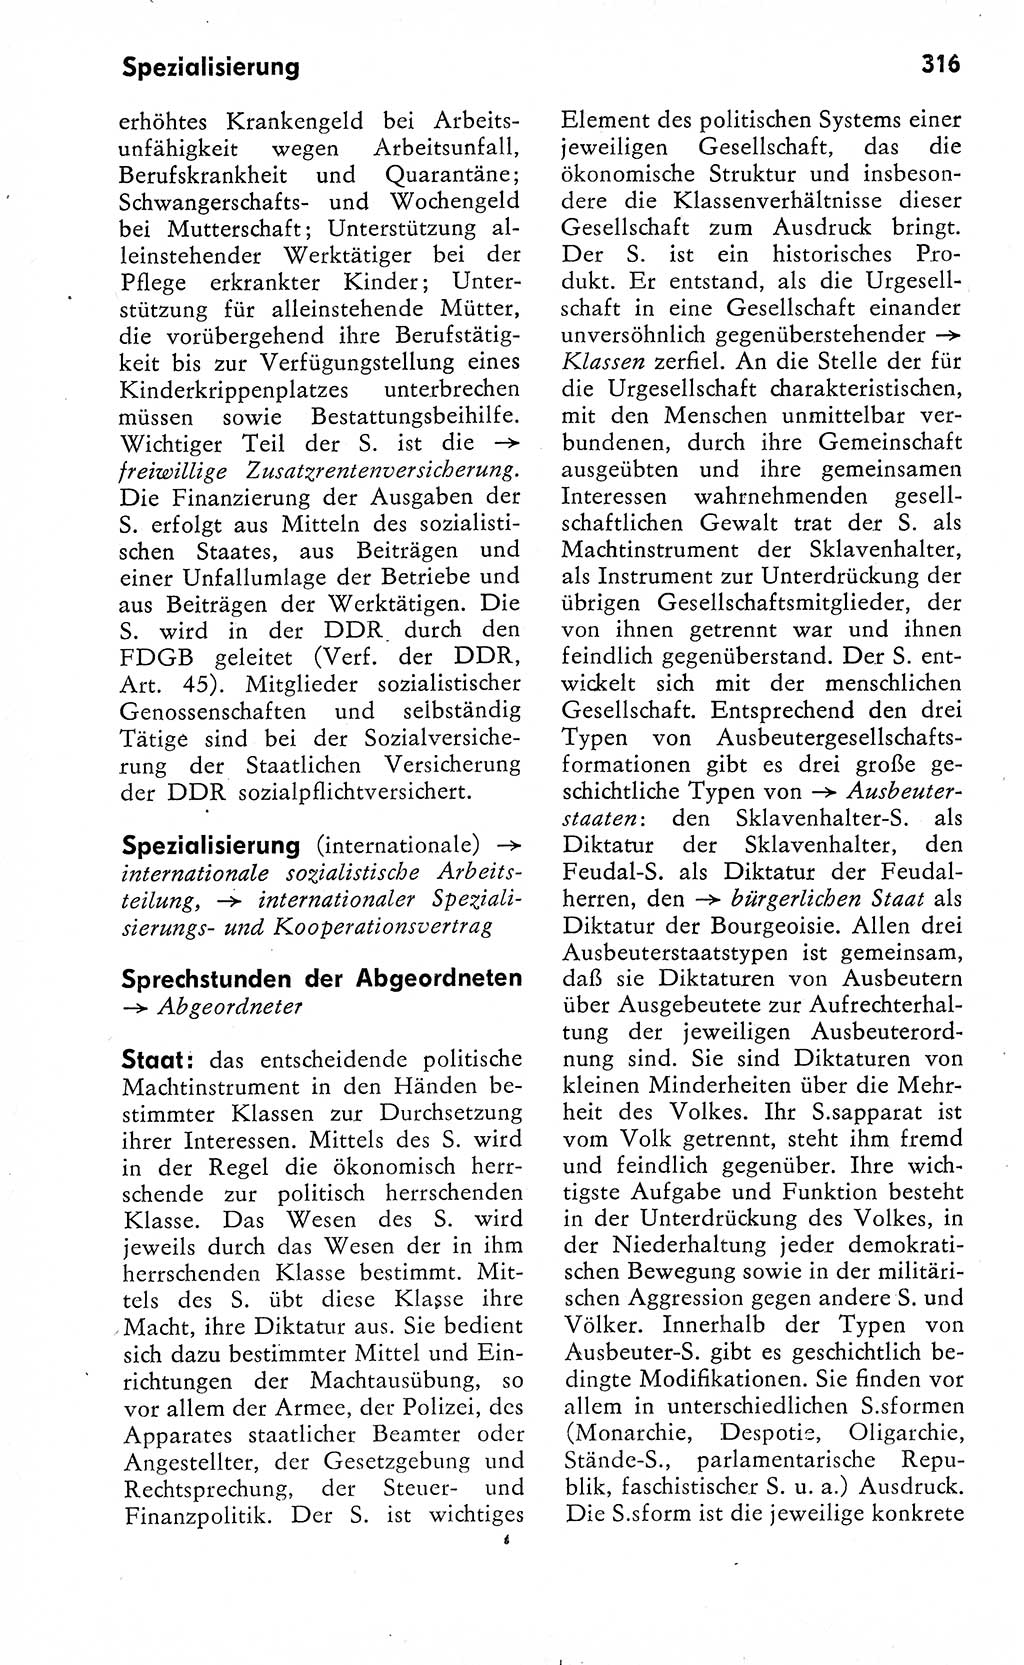 Wörterbuch zum sozialistischen Staat [Deutsche Demokratische Republik (DDR)] 1974, Seite 316 (Wb. soz. St. DDR 1974, S. 316)